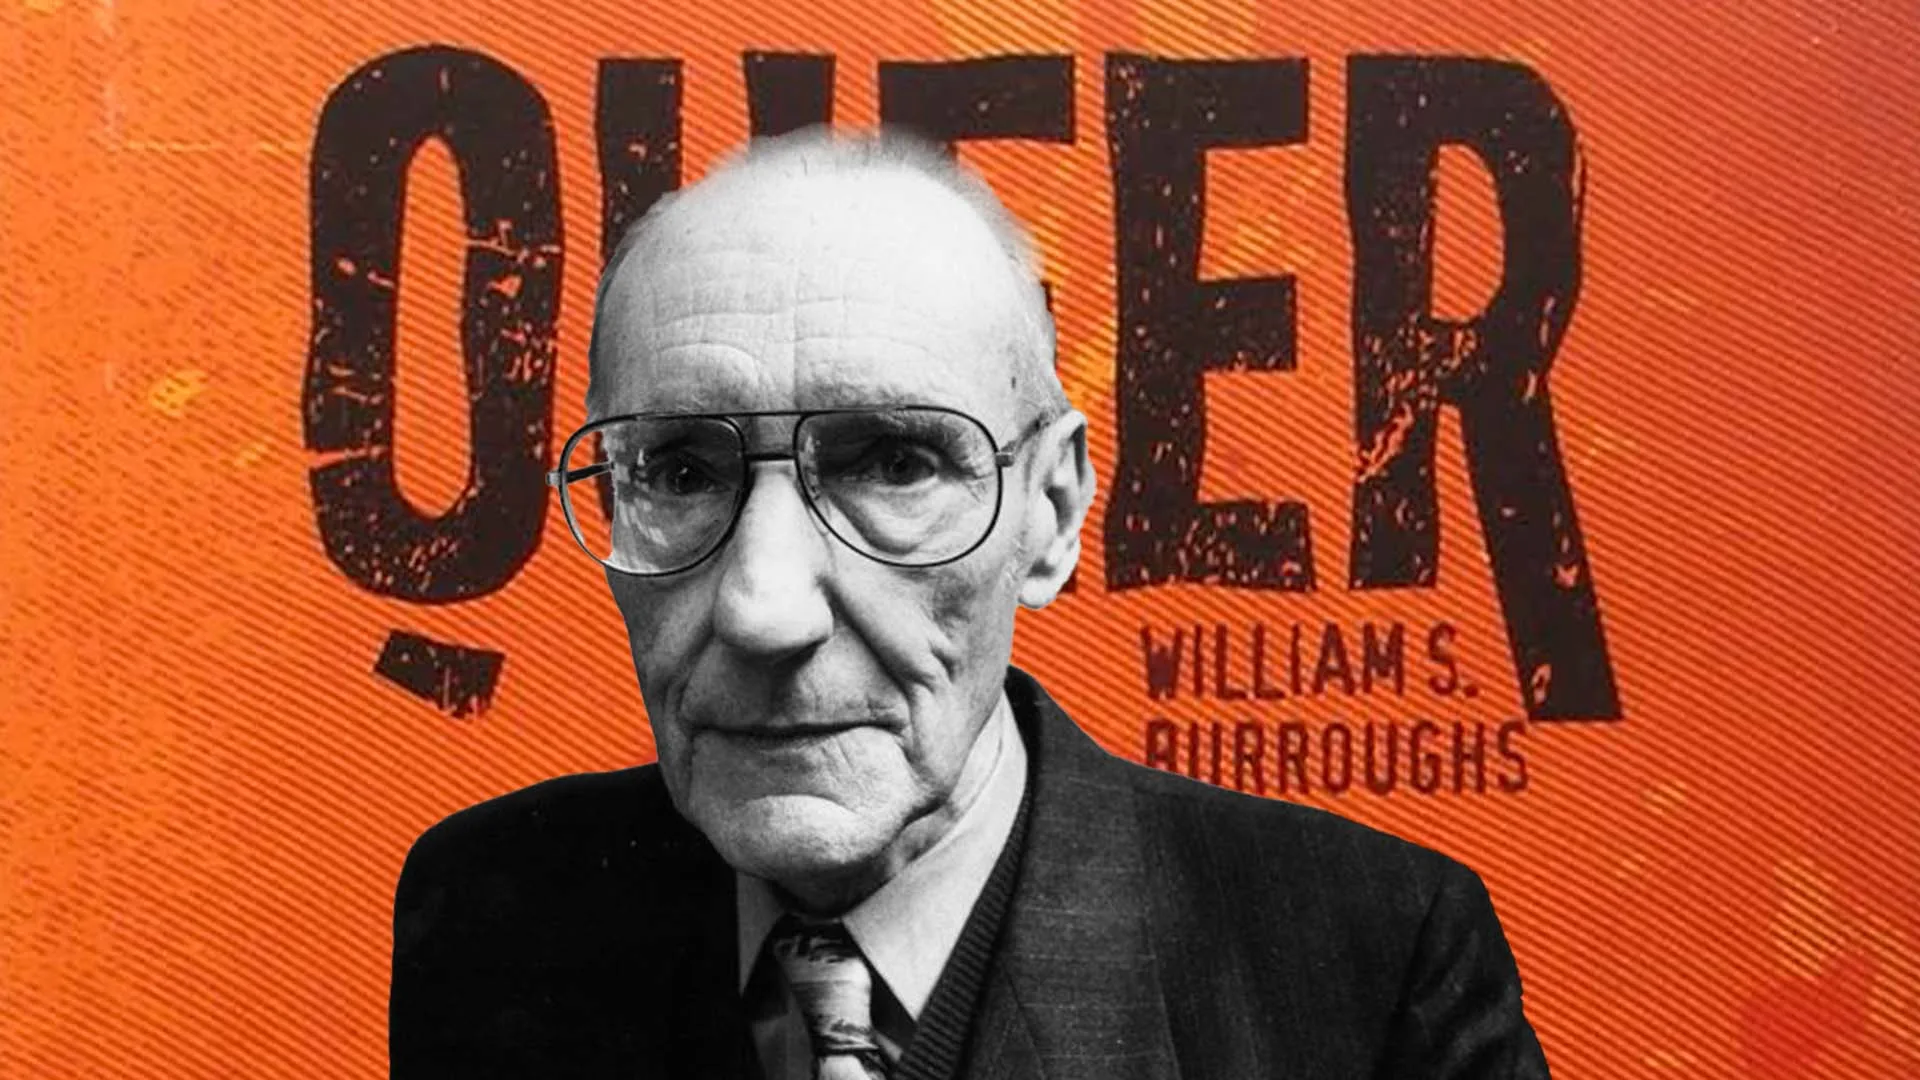 William S. Burroughs.